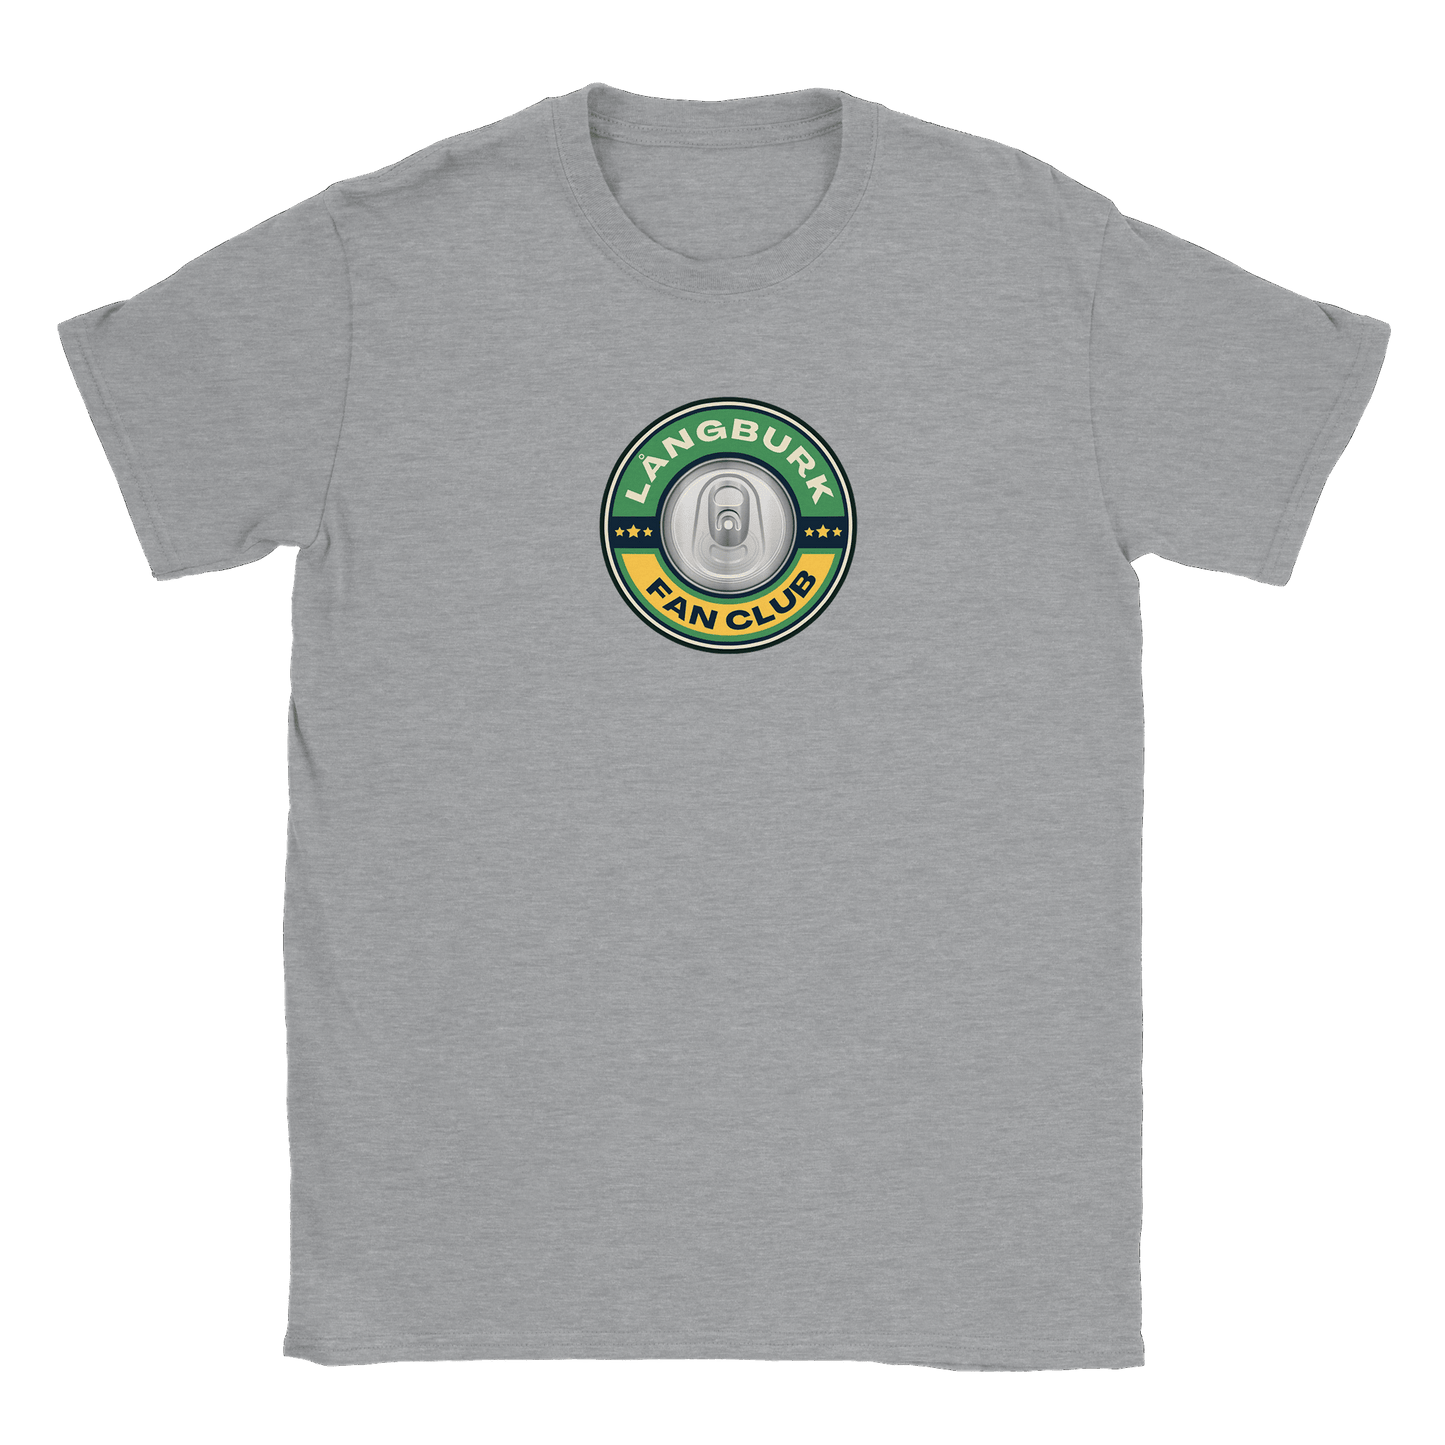 Långburk Fan Club - T-shirt Grå